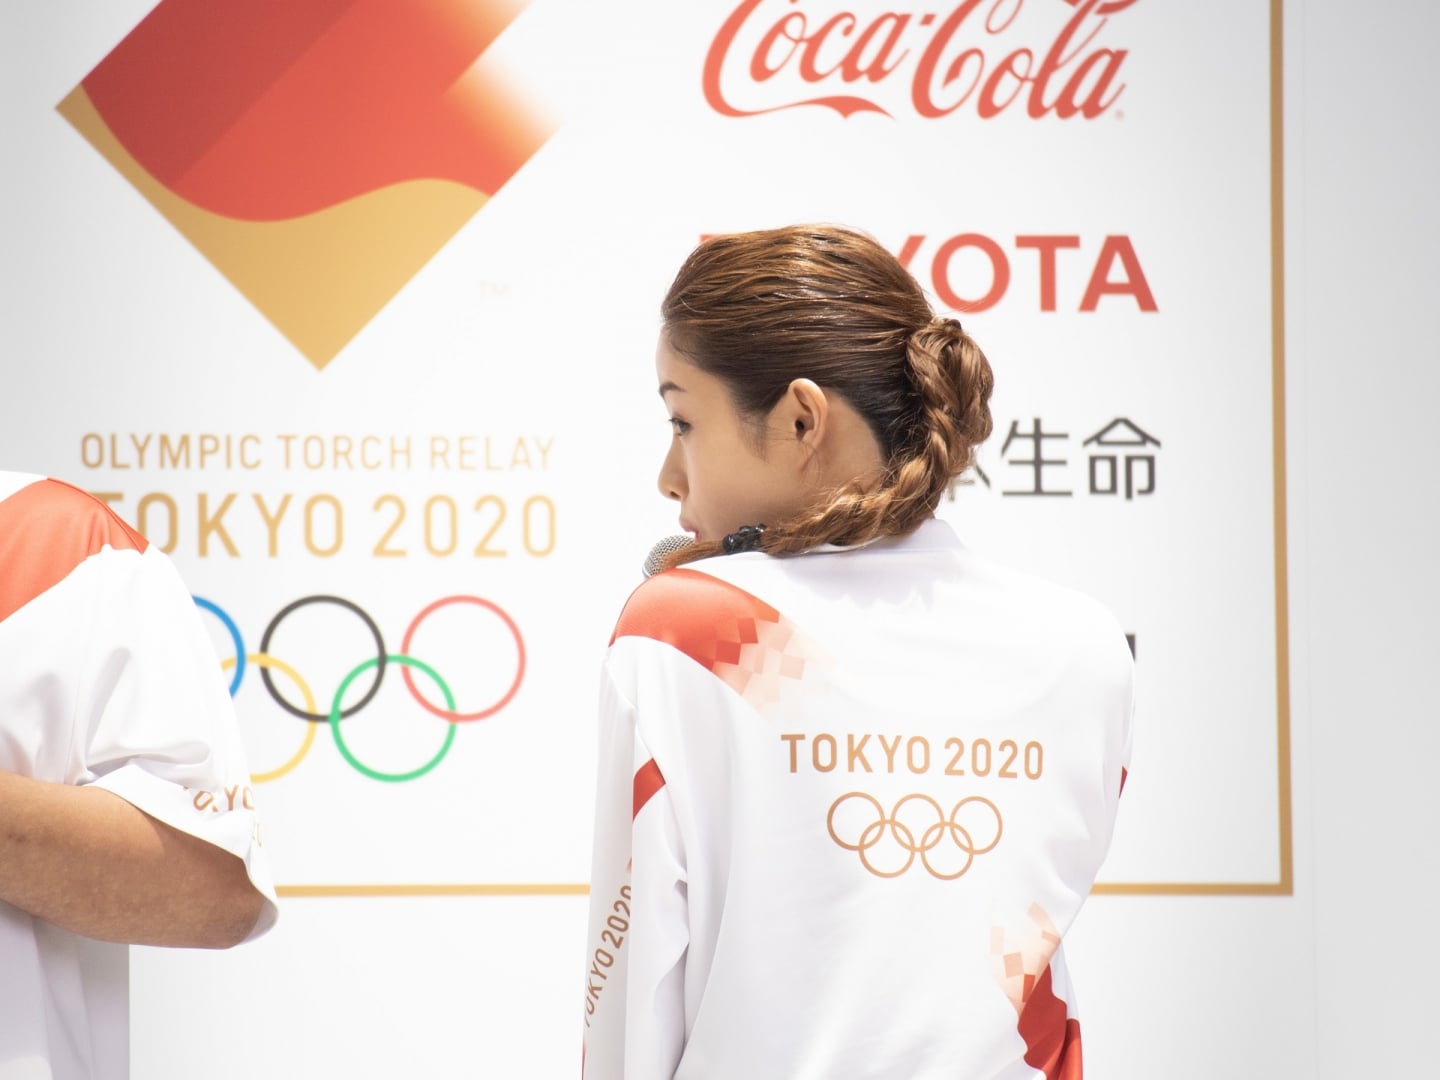 # 尾花大輔執刀設計：傳遞2020東京奧運聖火之旅 7